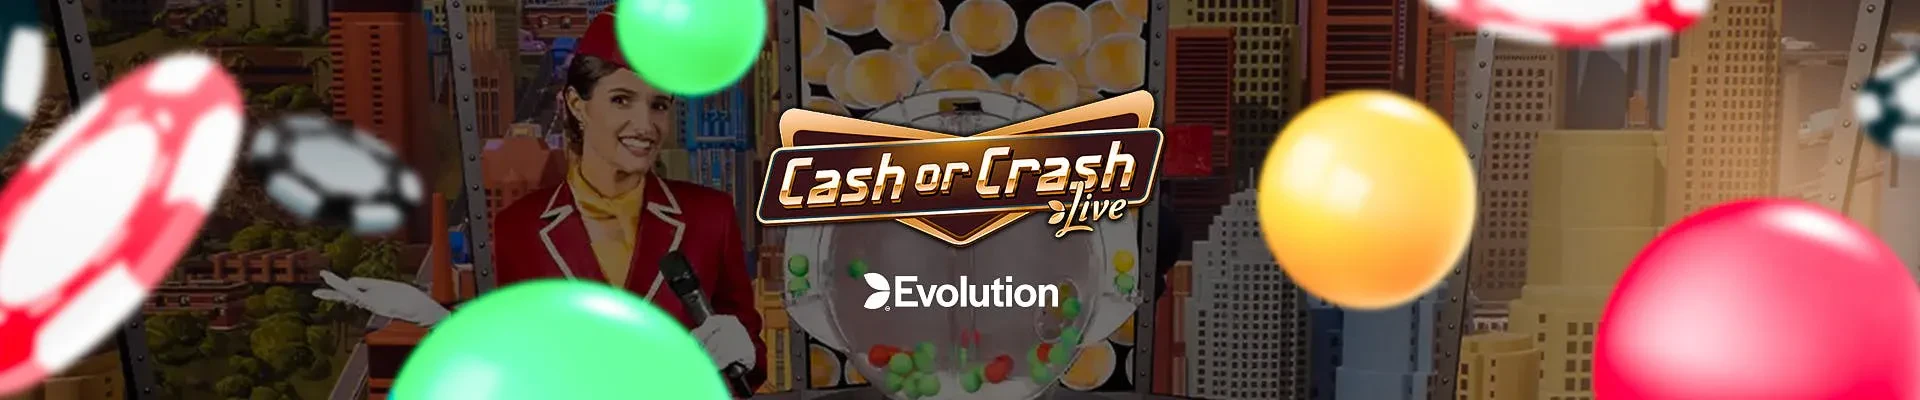 Cash or Crash header